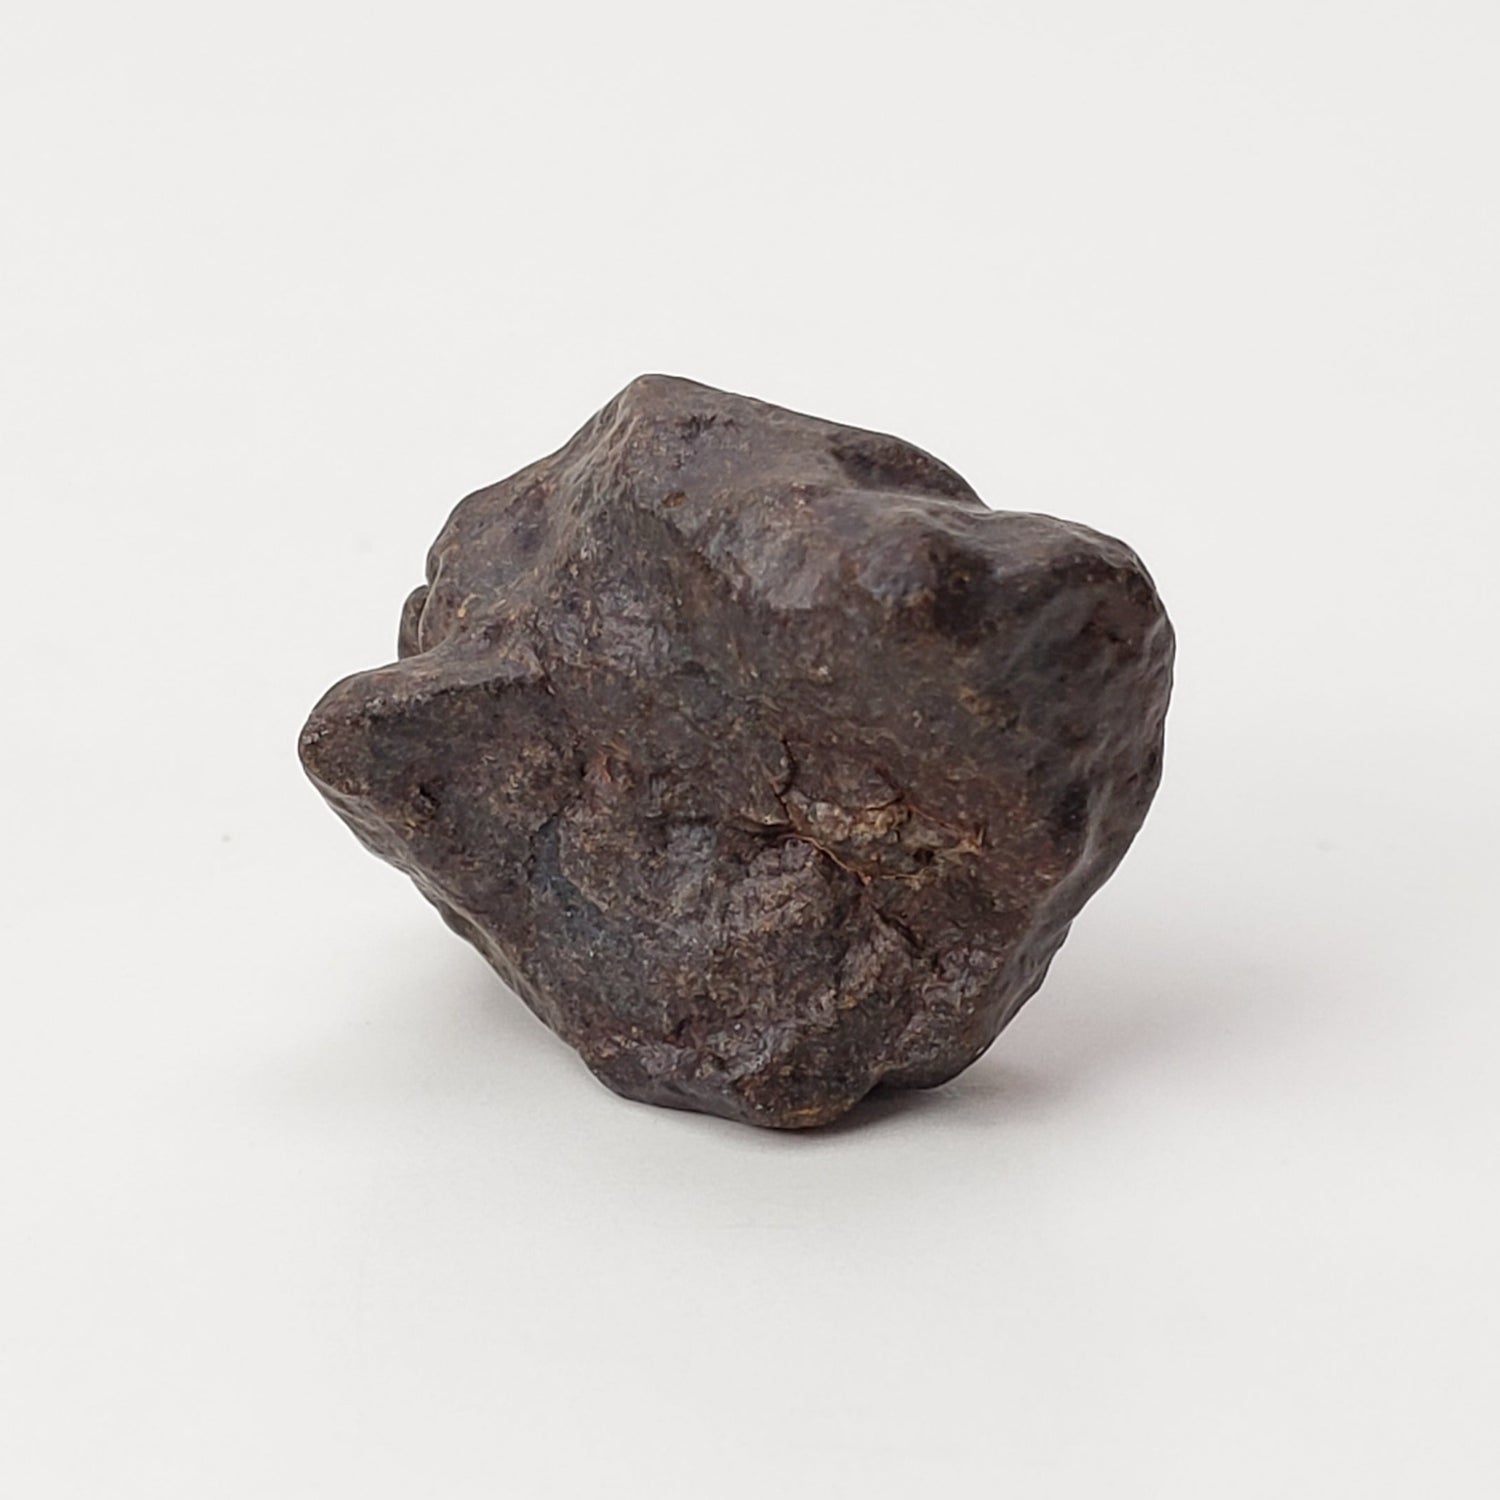 NWA 4293 Meteorite | 4.35 Grams | Individual | H6 Chondrite